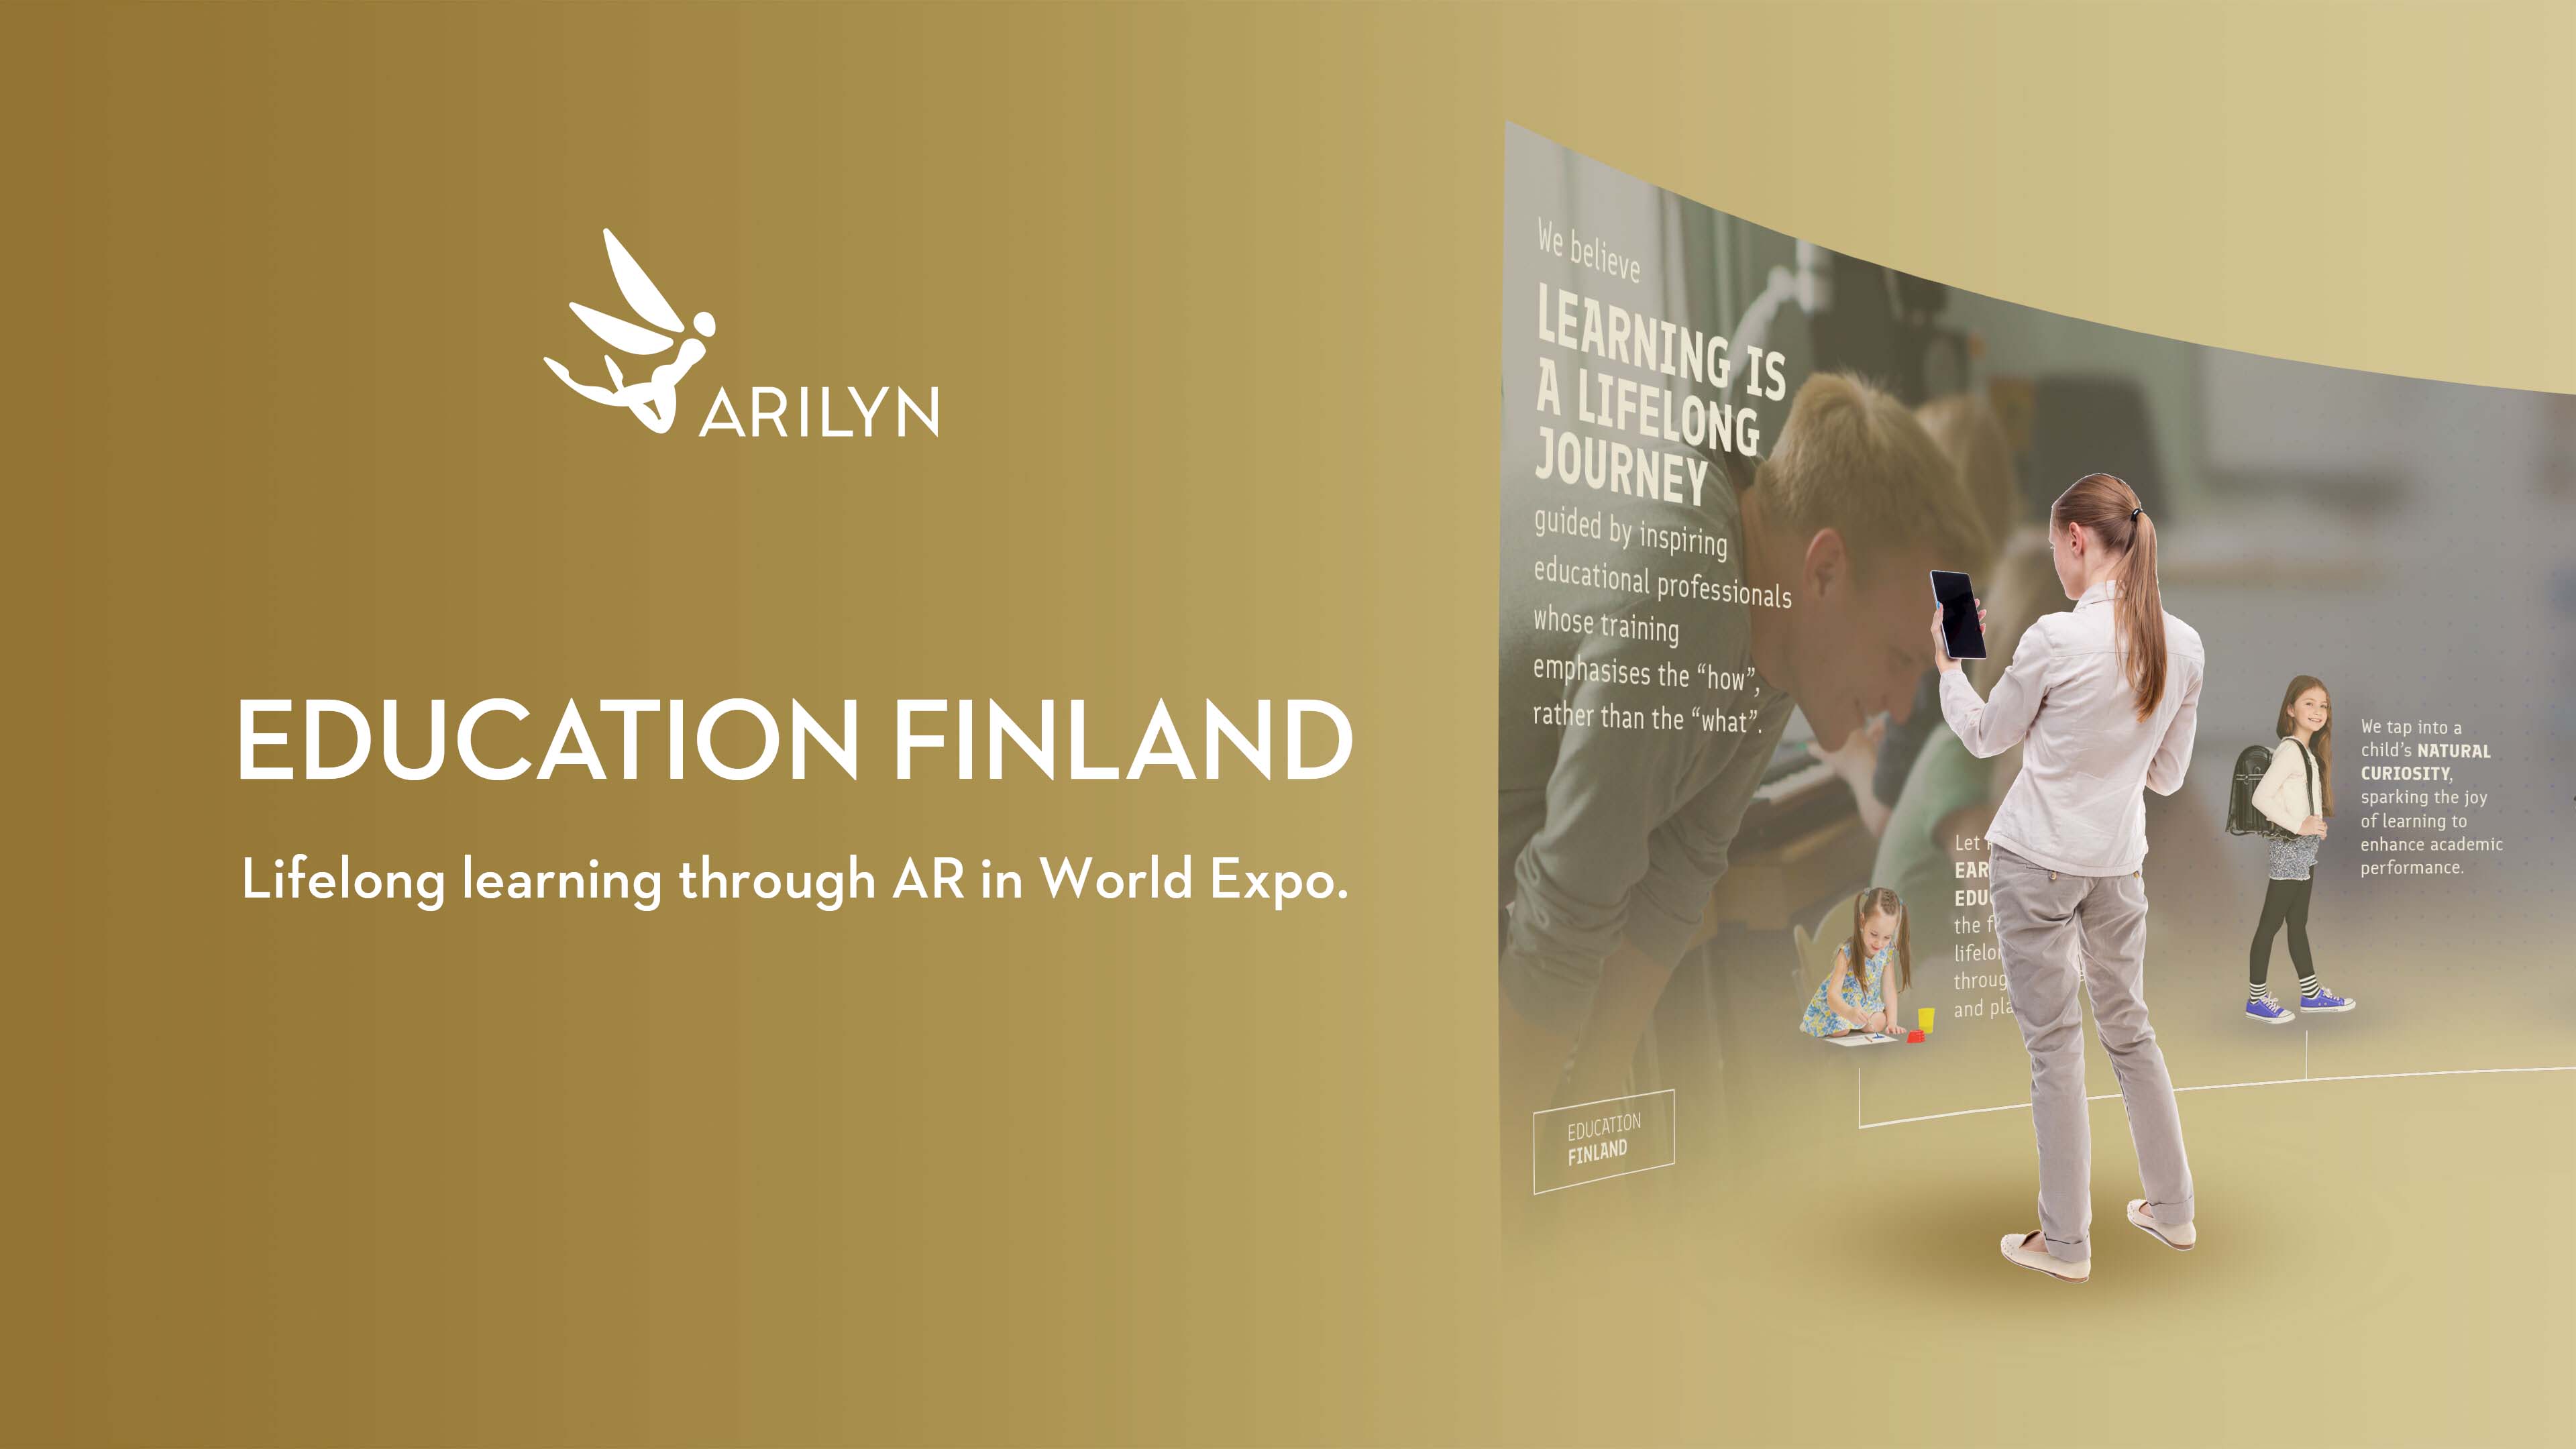 Education Finland in World Expo Dubai - world-class education via AR